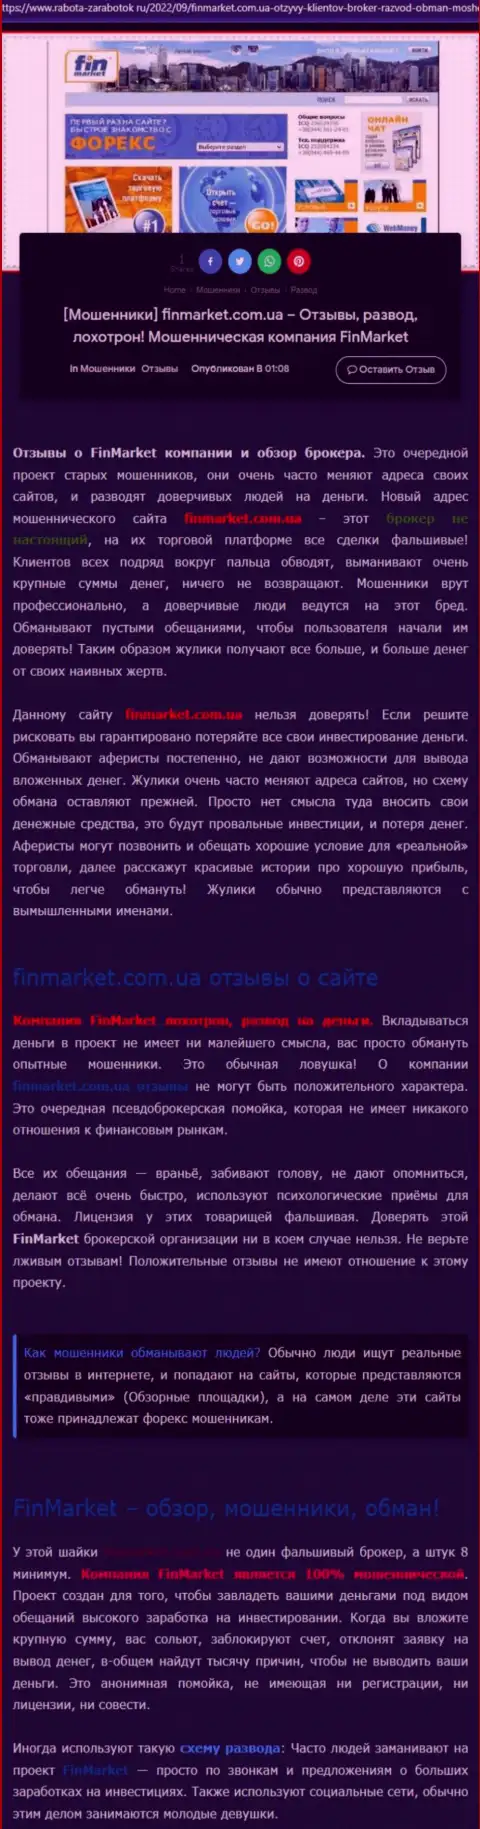 Анализ махинаций компании FinMarket - надувают грубо (обзор неправомерных действий)